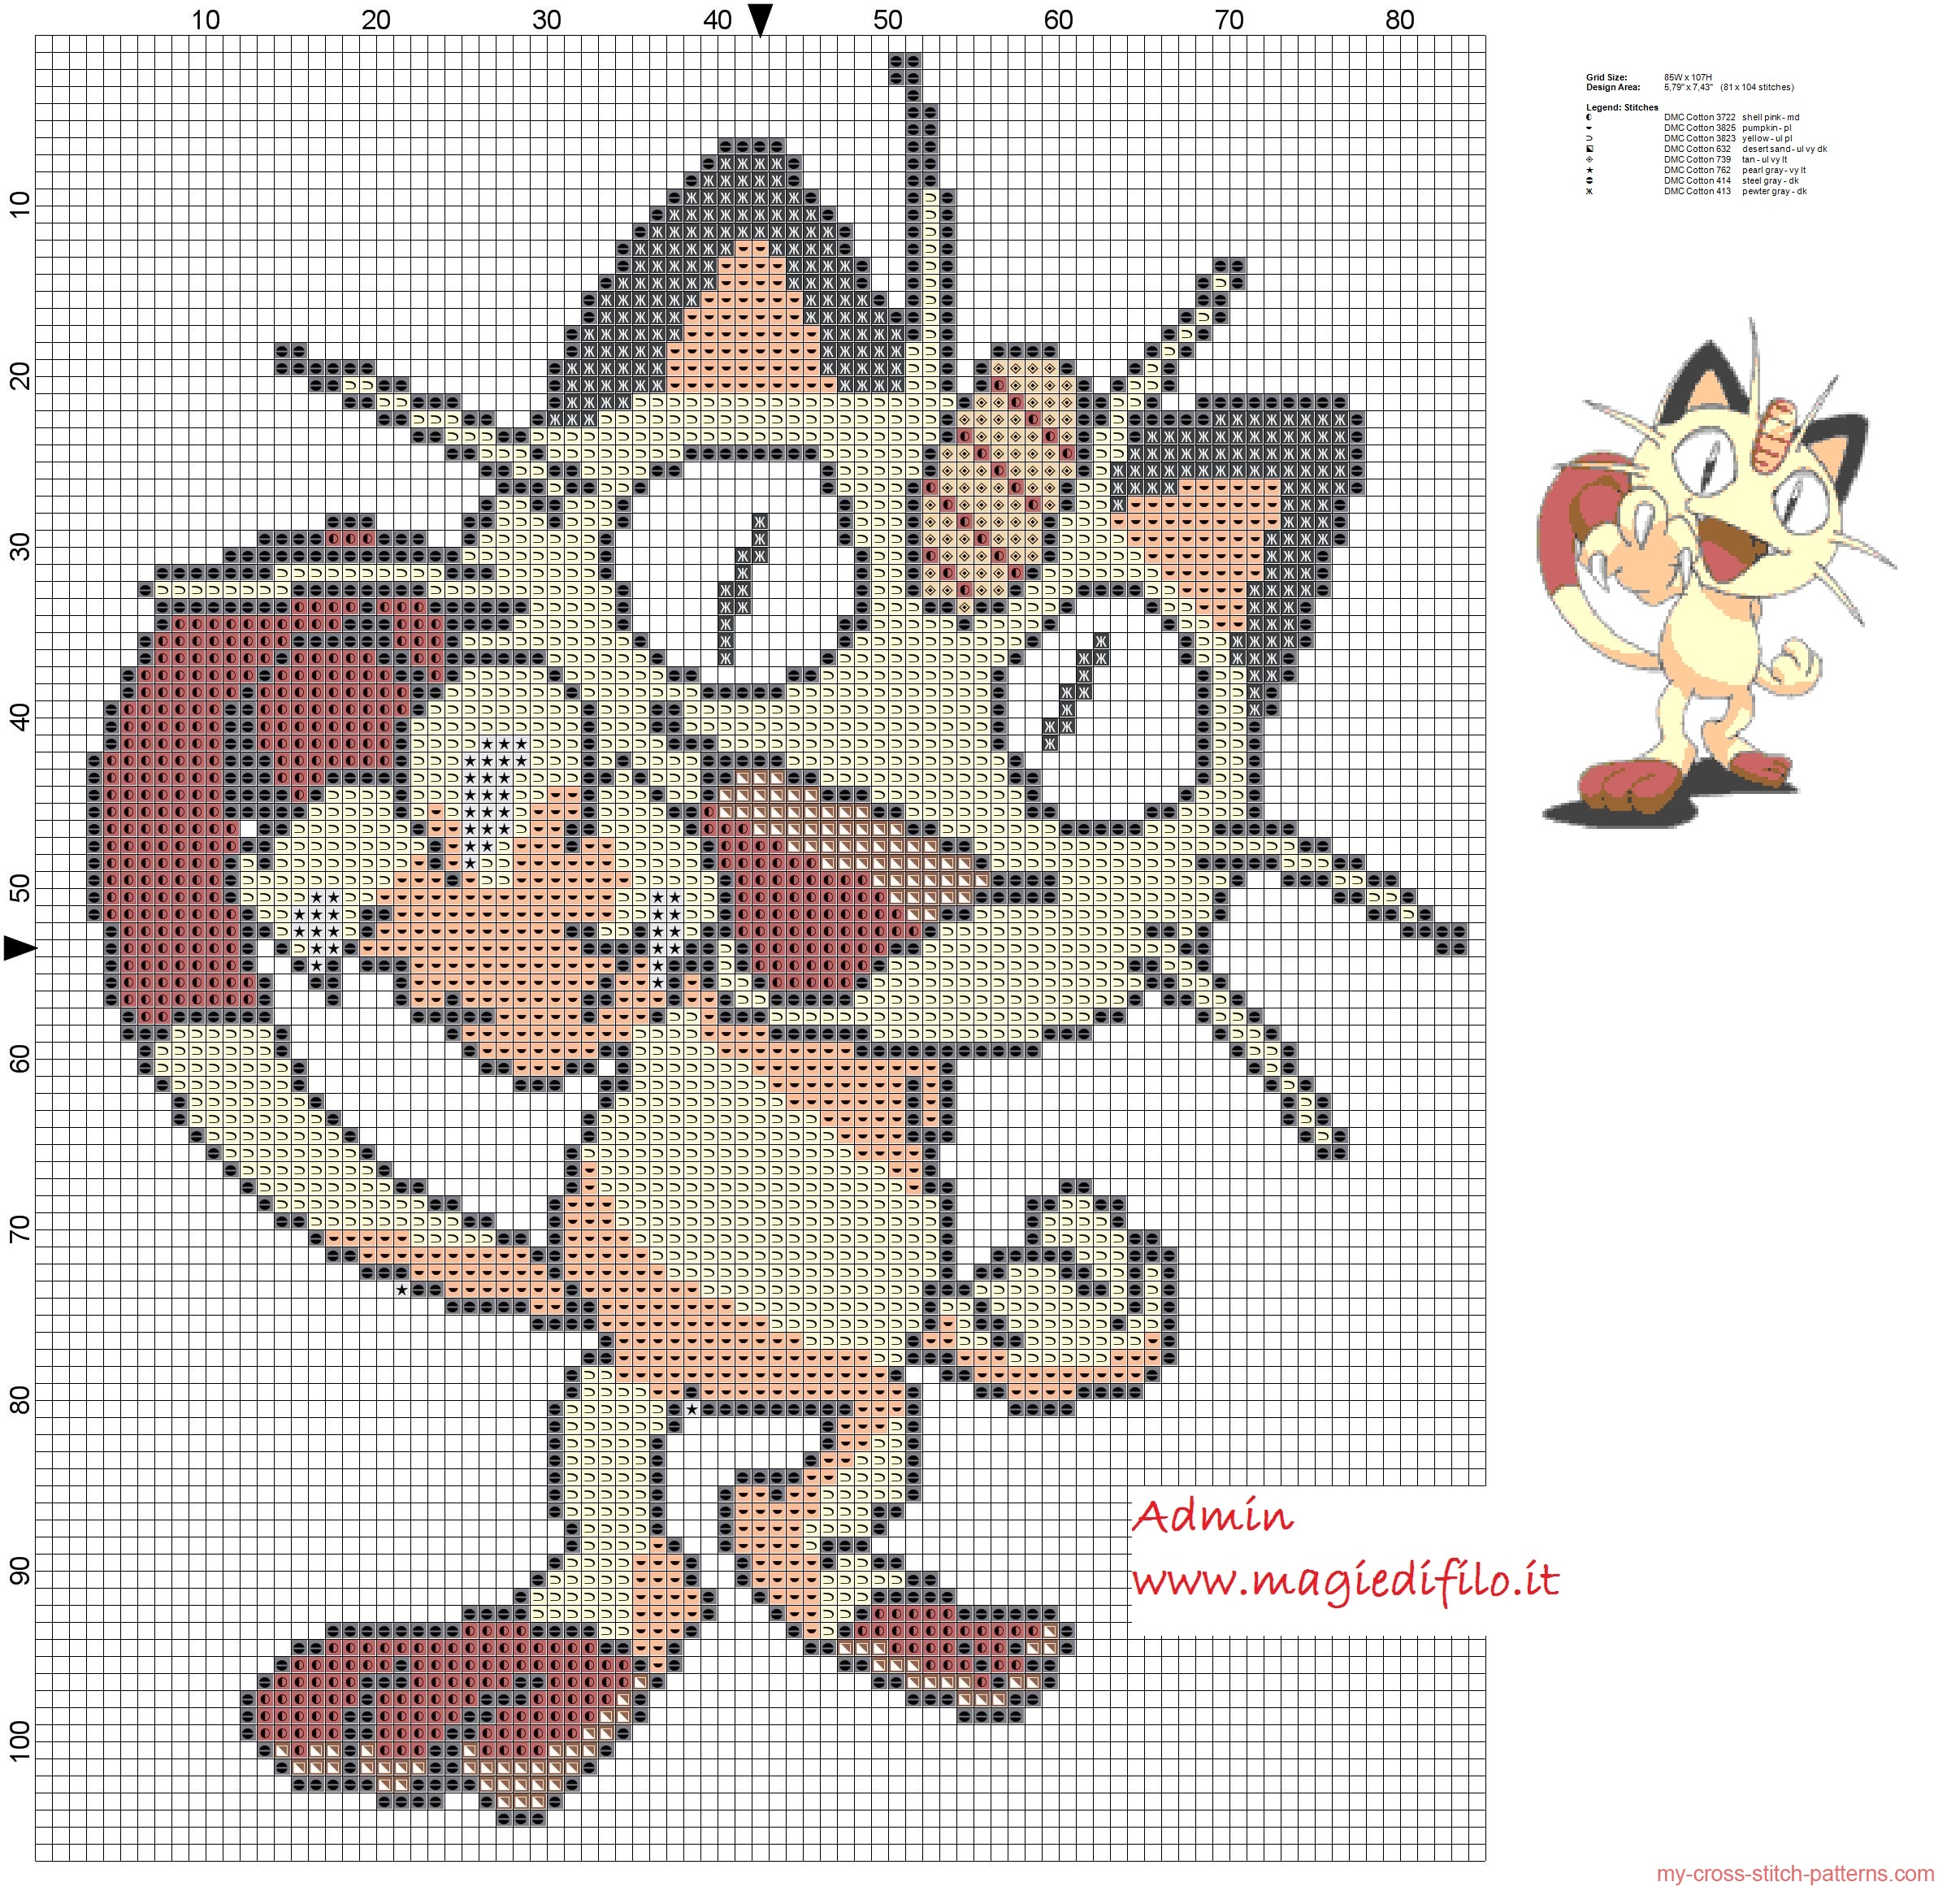 meowth_pokemon_052_cross_stitch_pattern_free